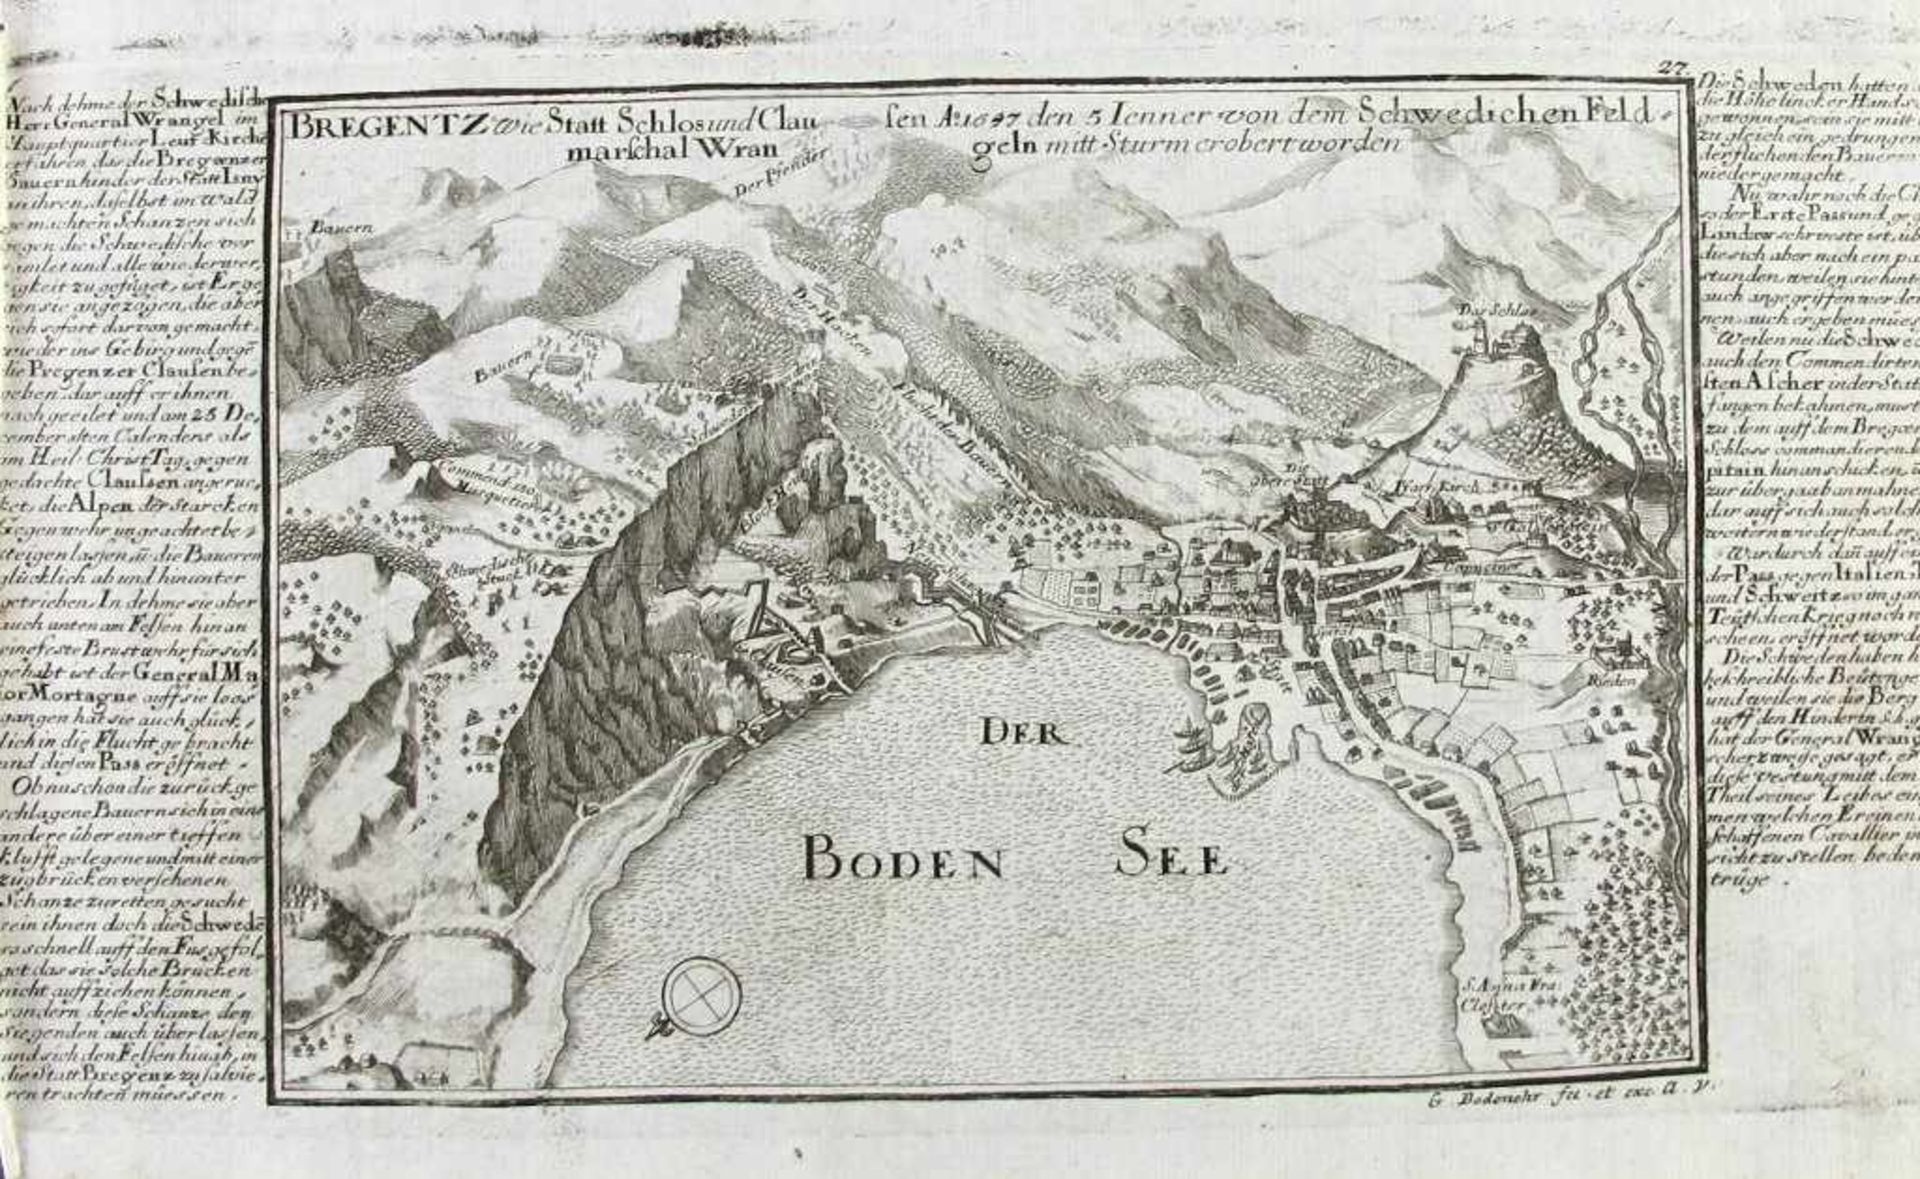 Bregenz. "Bregentz wie Statt Schlos und Clausen A. 1647 den 5. Ienner von dem Schwedichen